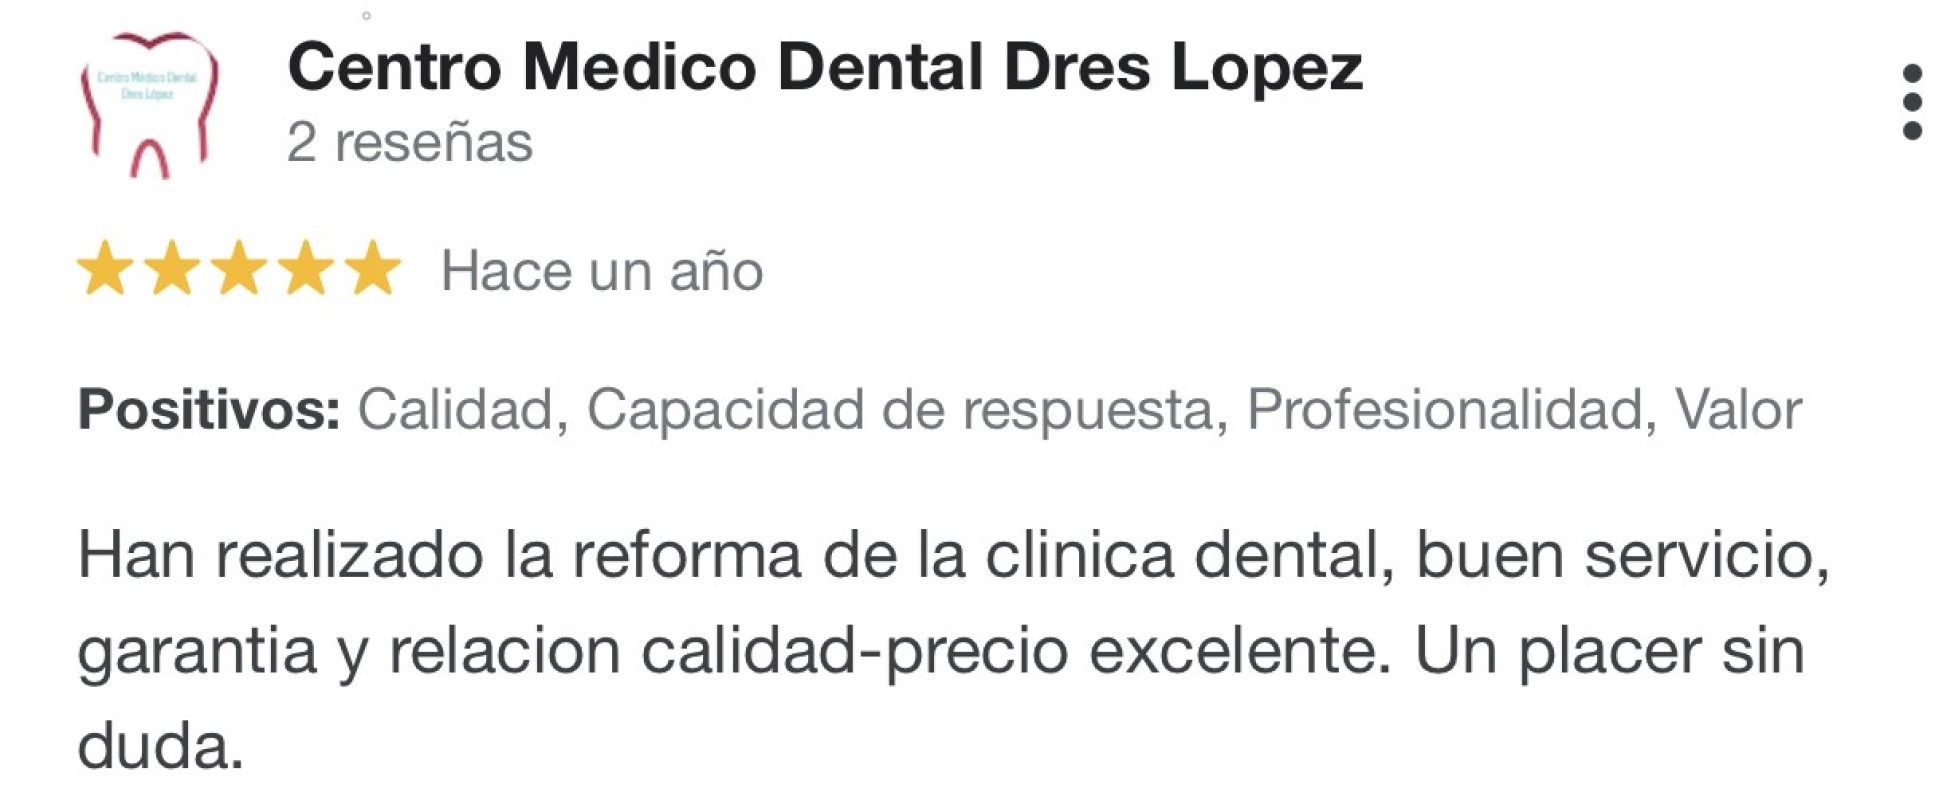 reseña acentro medico dental Dres Lopez 5 estrellas